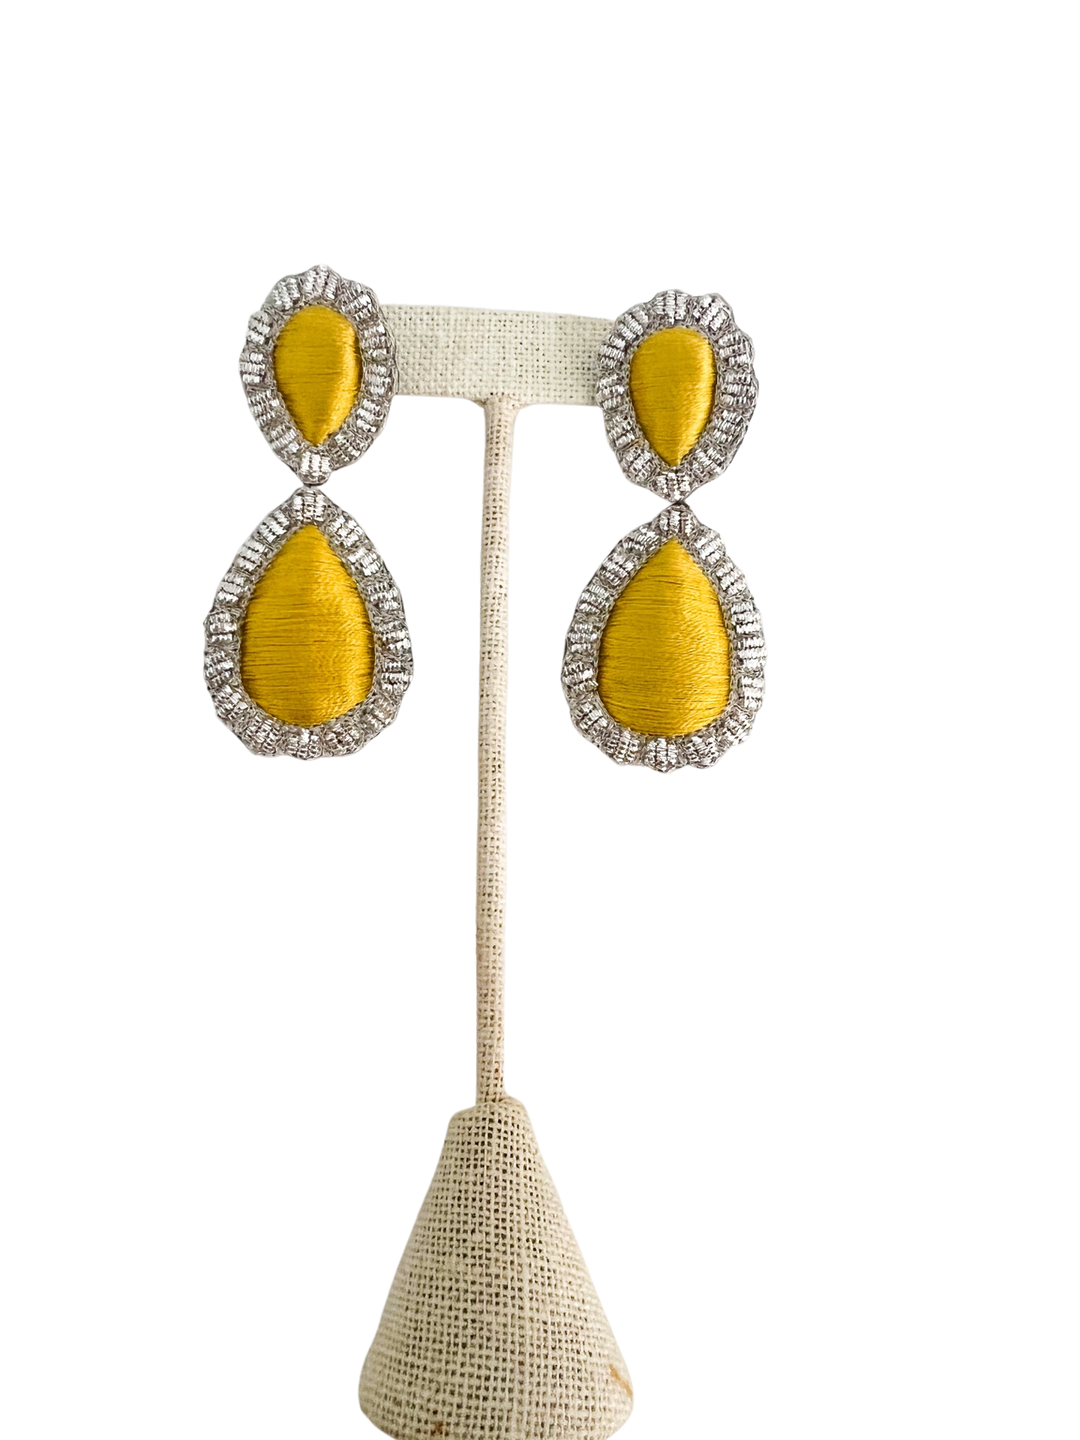 Sophia203 Jewelry Yellow Sophia 203 Jewelry | Giant Gem Earrings